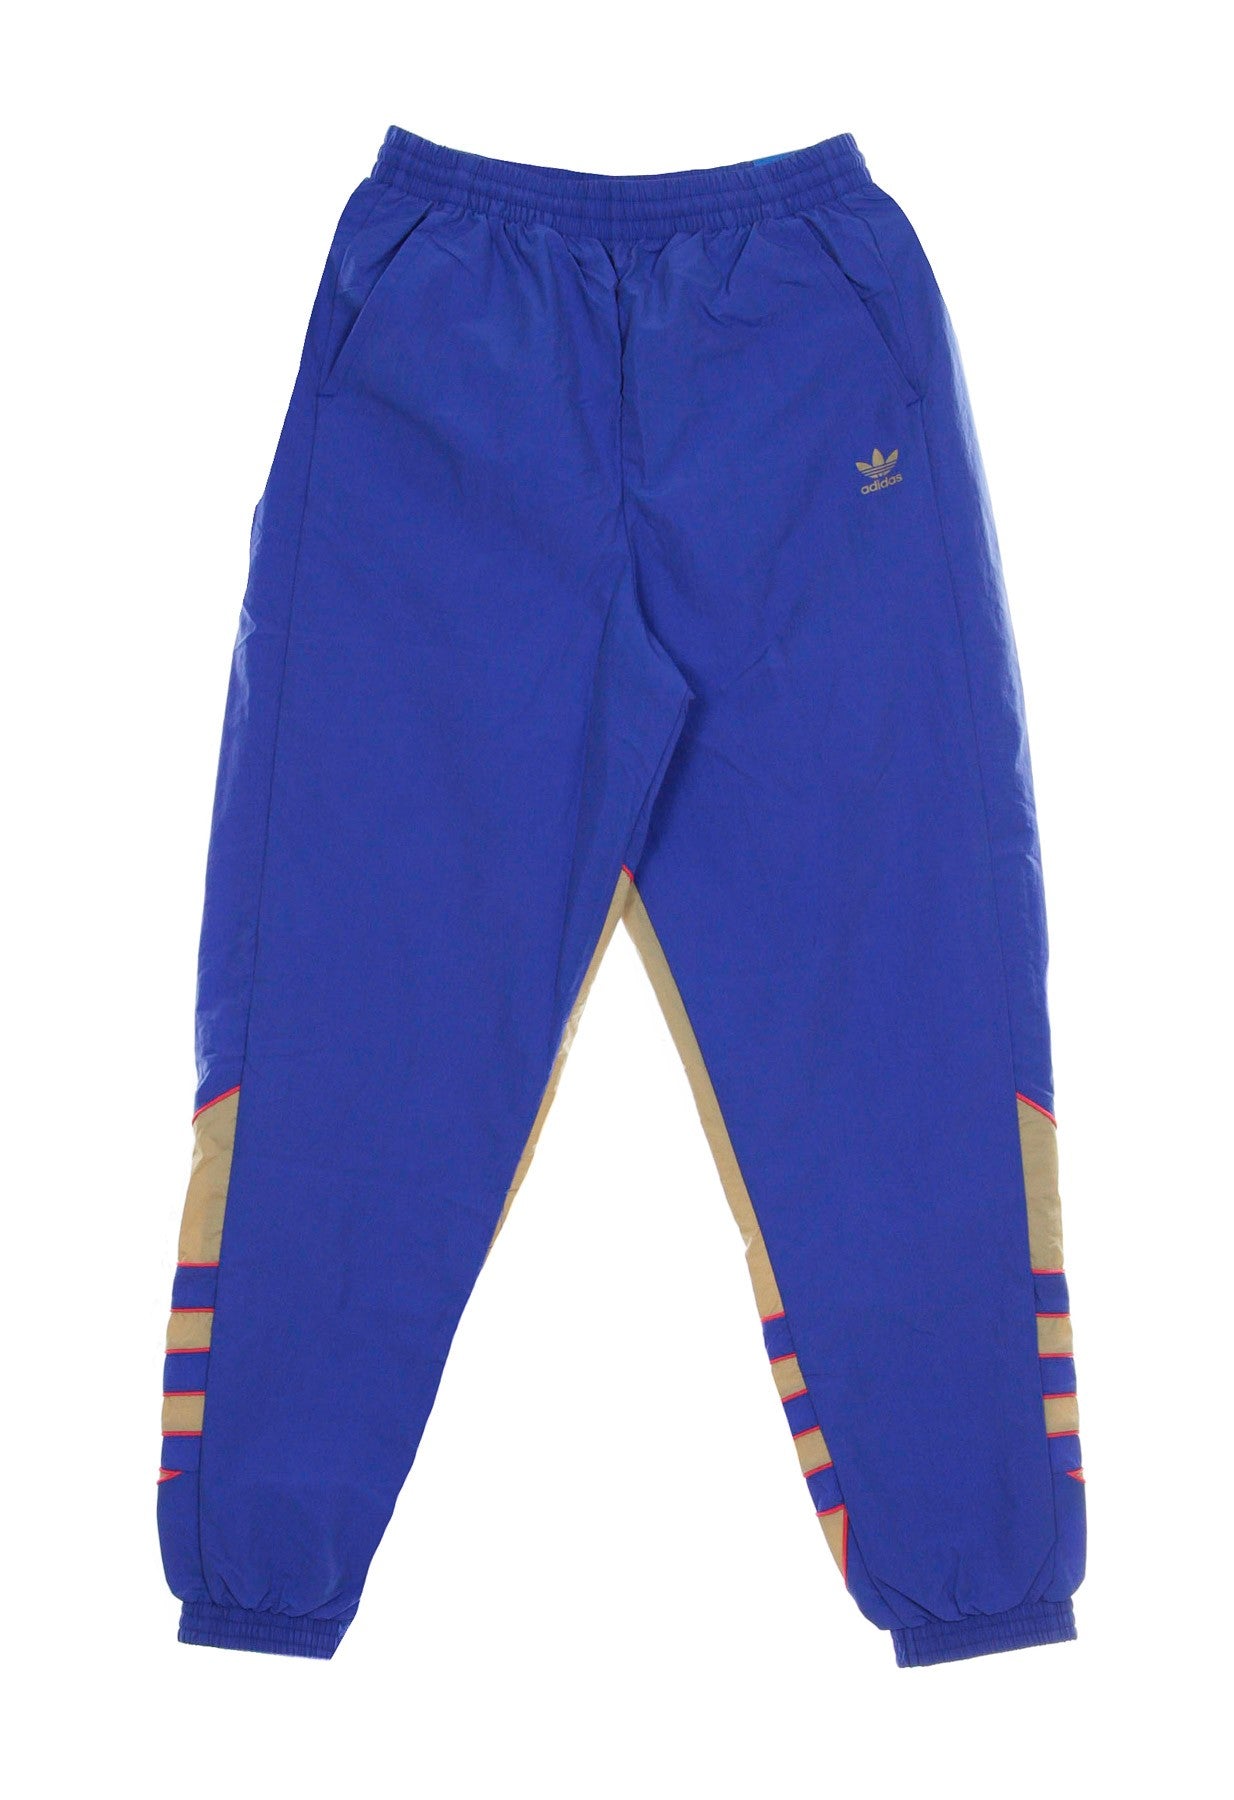 Pantalone Tuta Donna Big Trefoil Track Pant Royal Blue/trace Khaki/power Pink